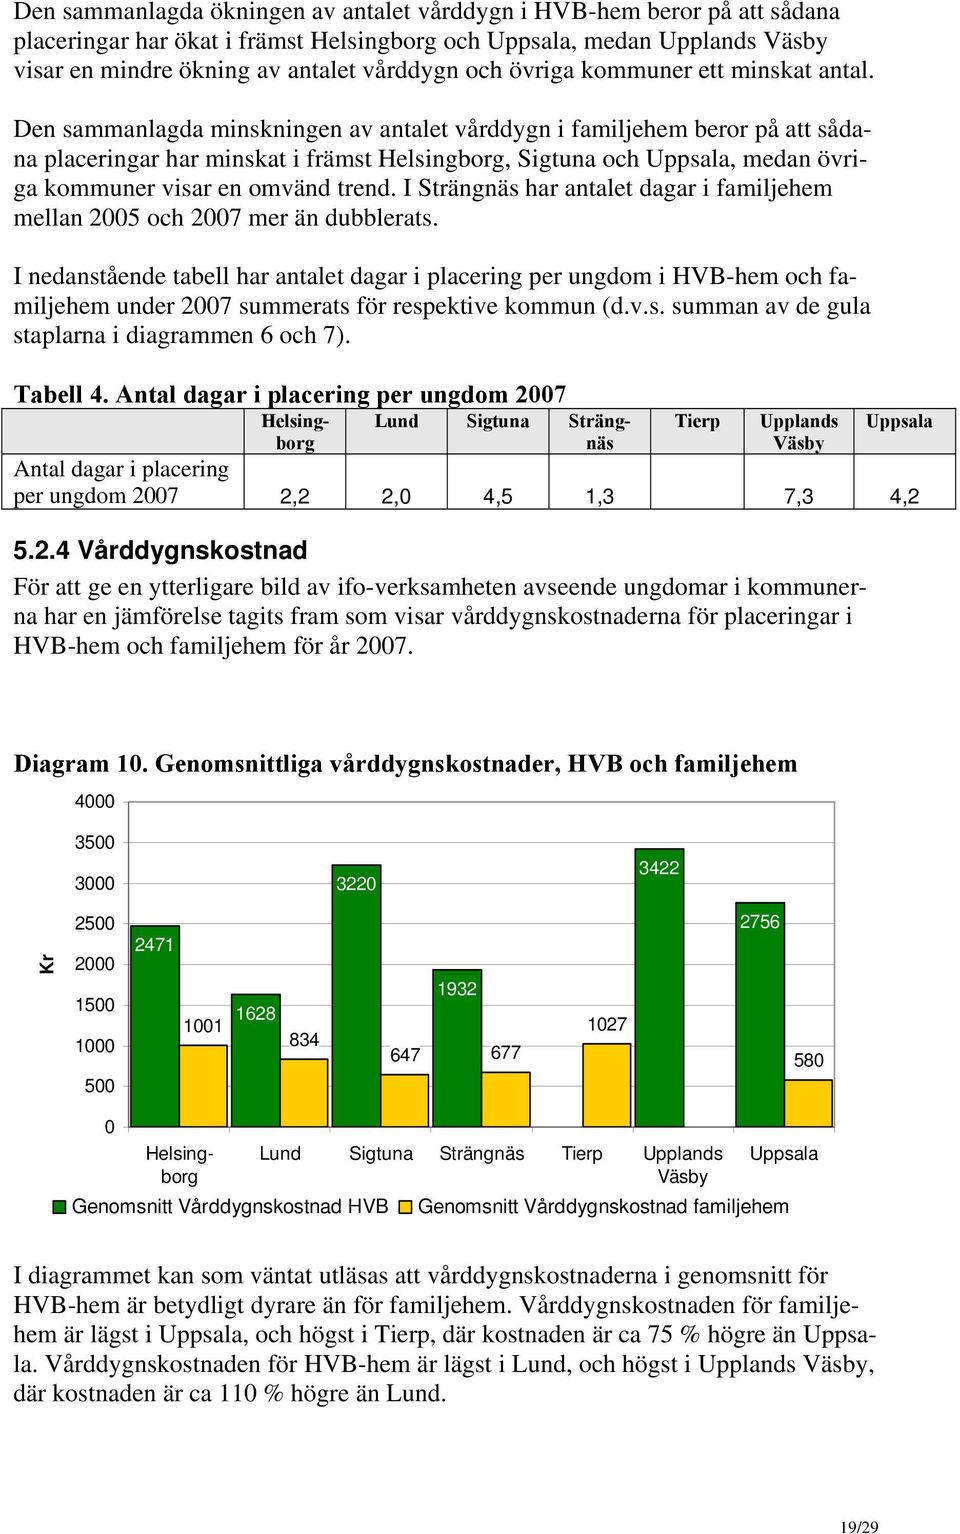 I Strängnäs har antalet dagar i familjehem mellan 2005 och 2007 mer än dubblerats.